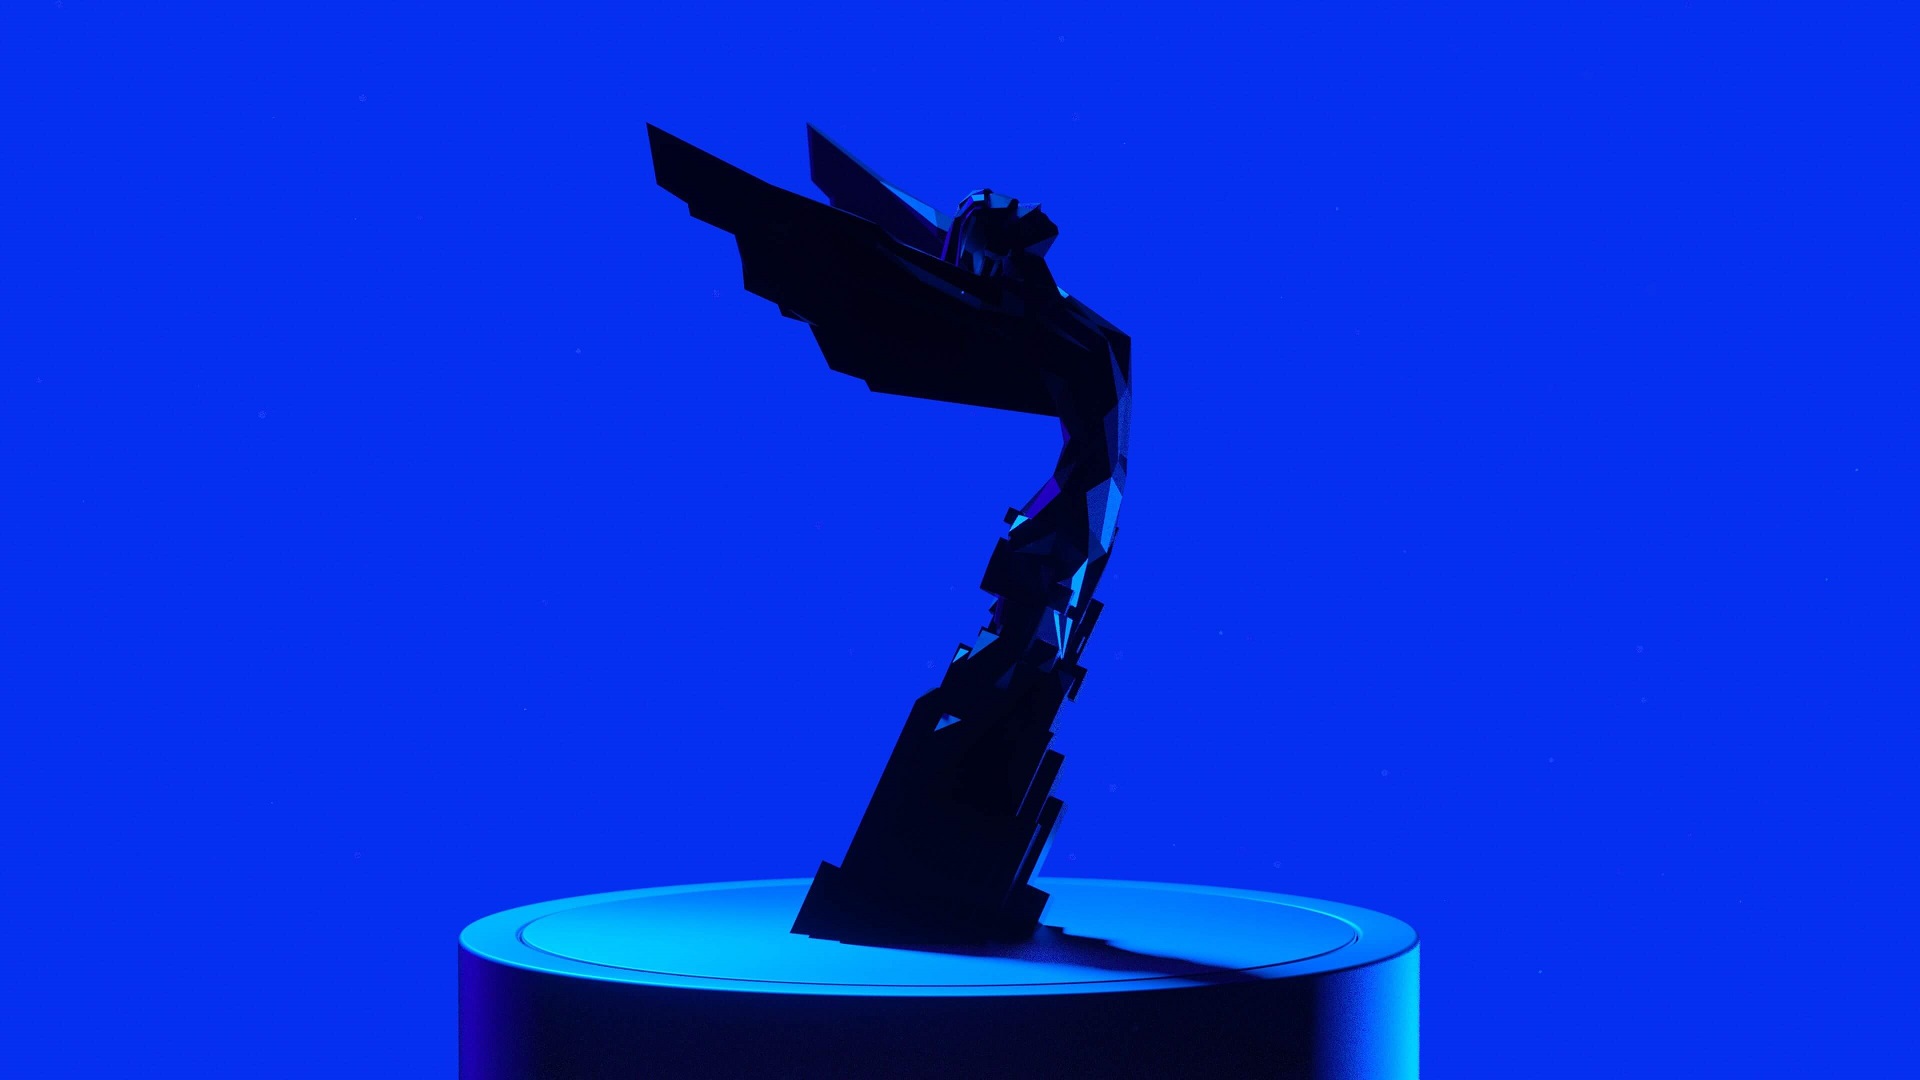 The Game Awards 2022: fecha, hora, dónde ver la gala y lista de